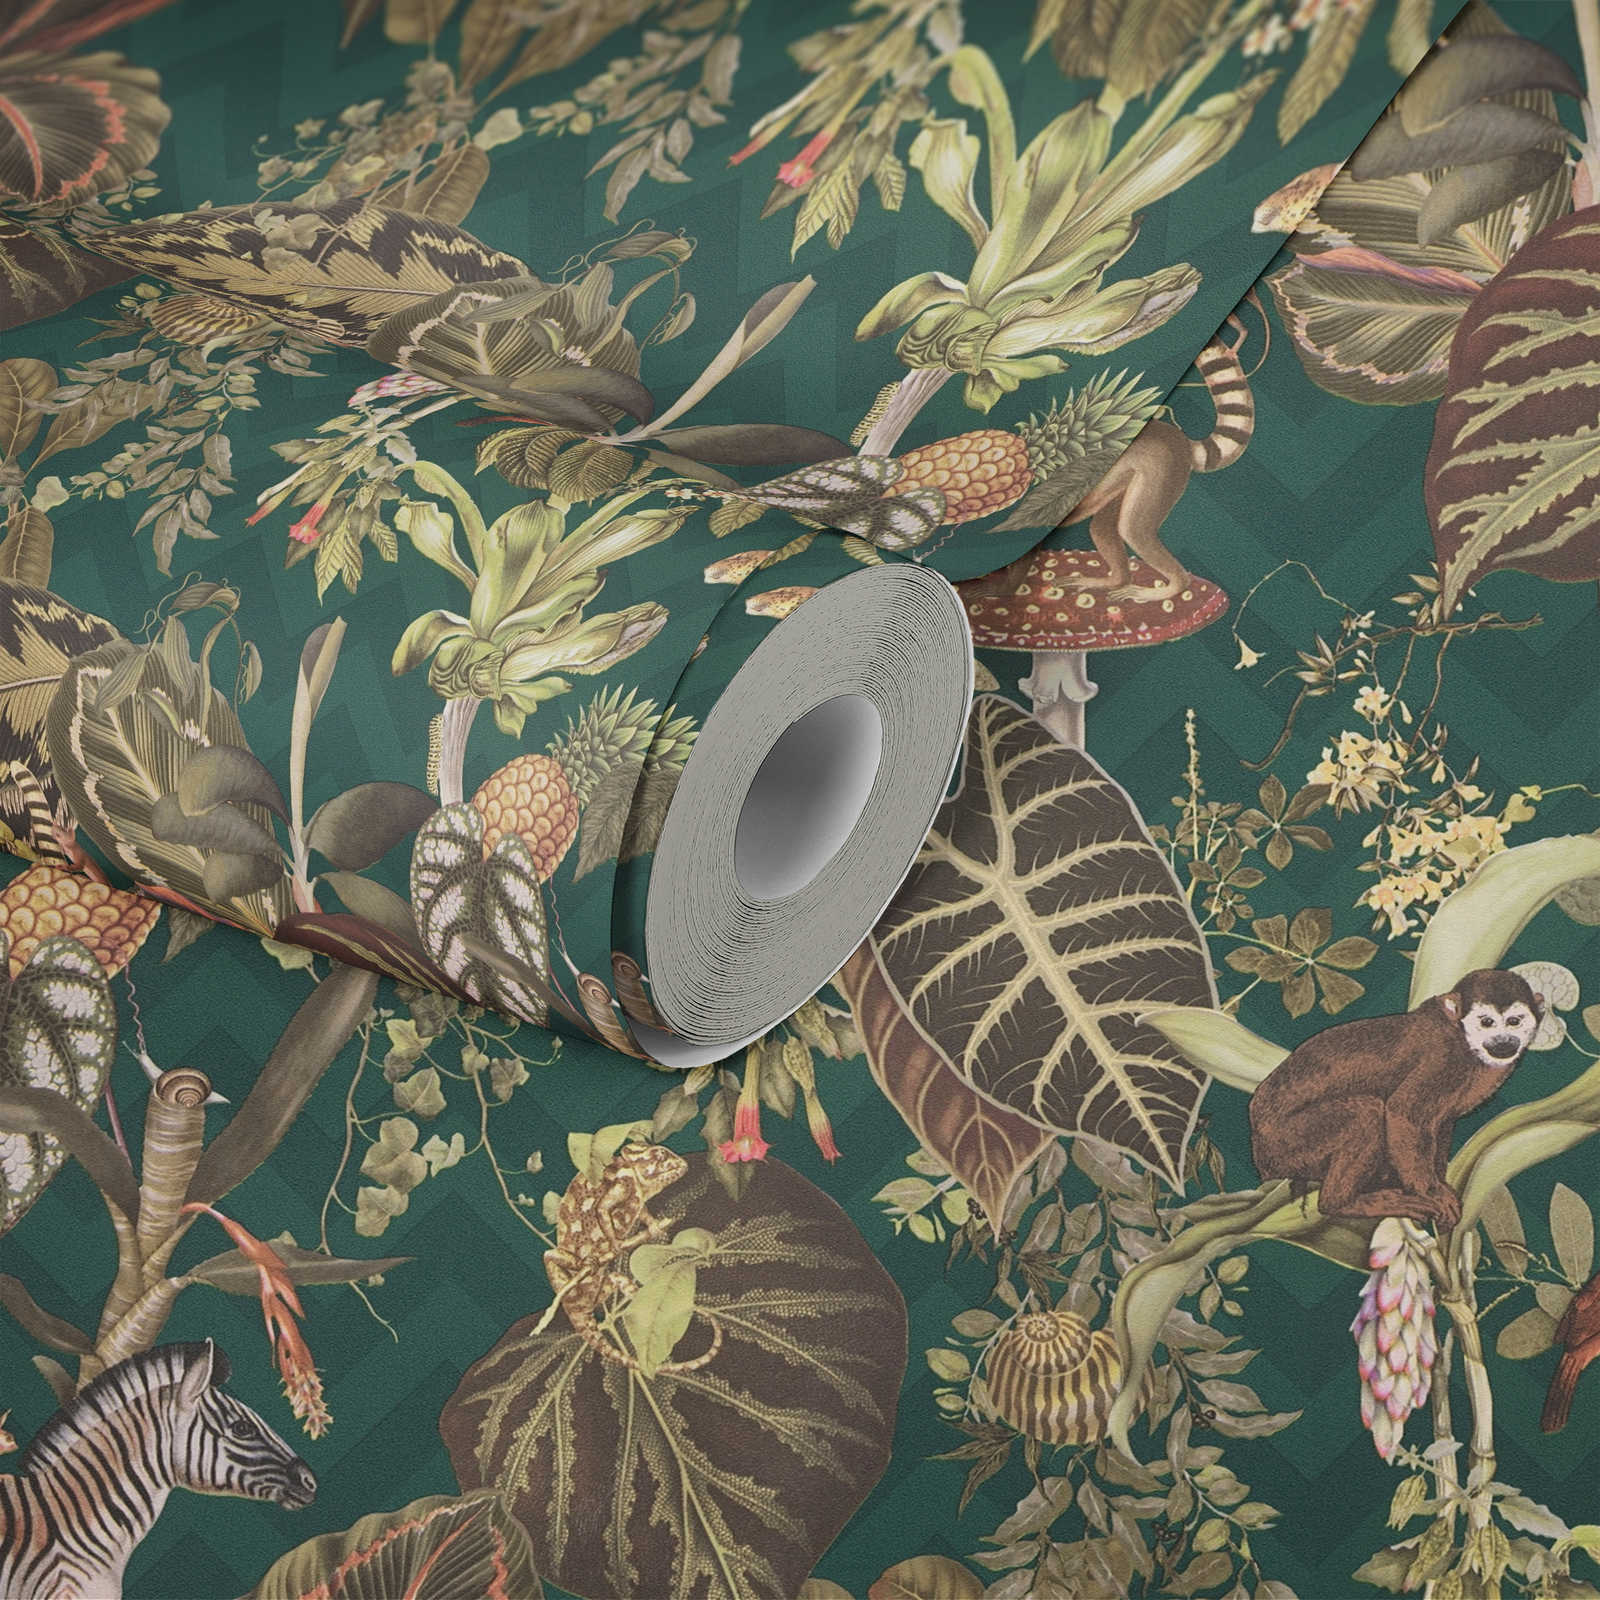             Papier peint de designer MICHALSKY Jungle feuilles & animaux - multicolore, vert
        